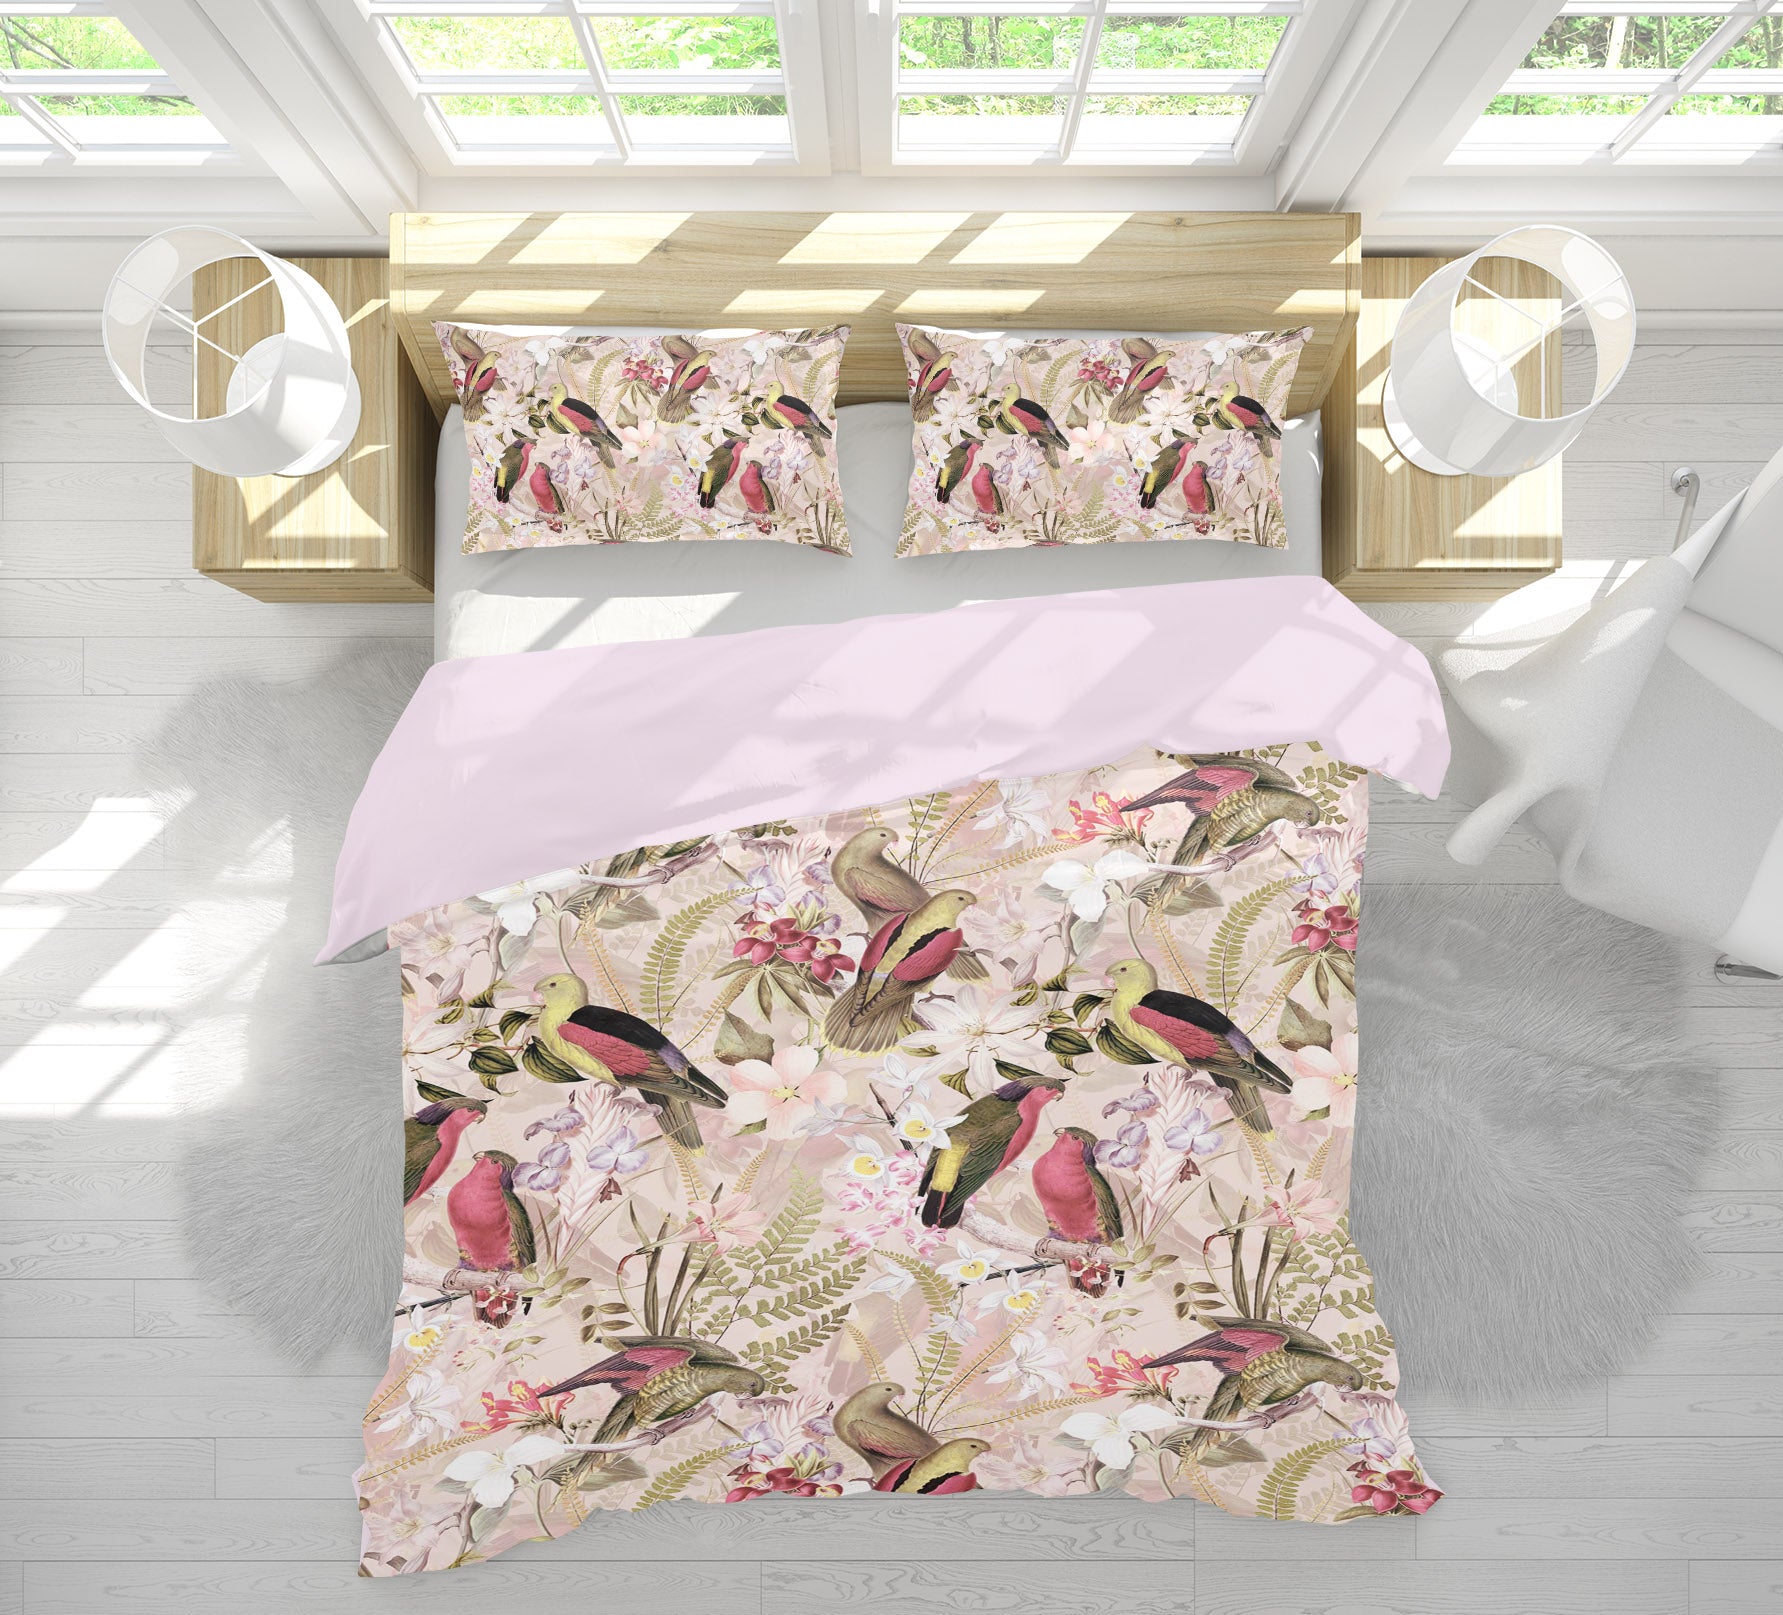 3D Parrot Flower 101 Uta Naumann Bedding Bed Pillowcases Quilt